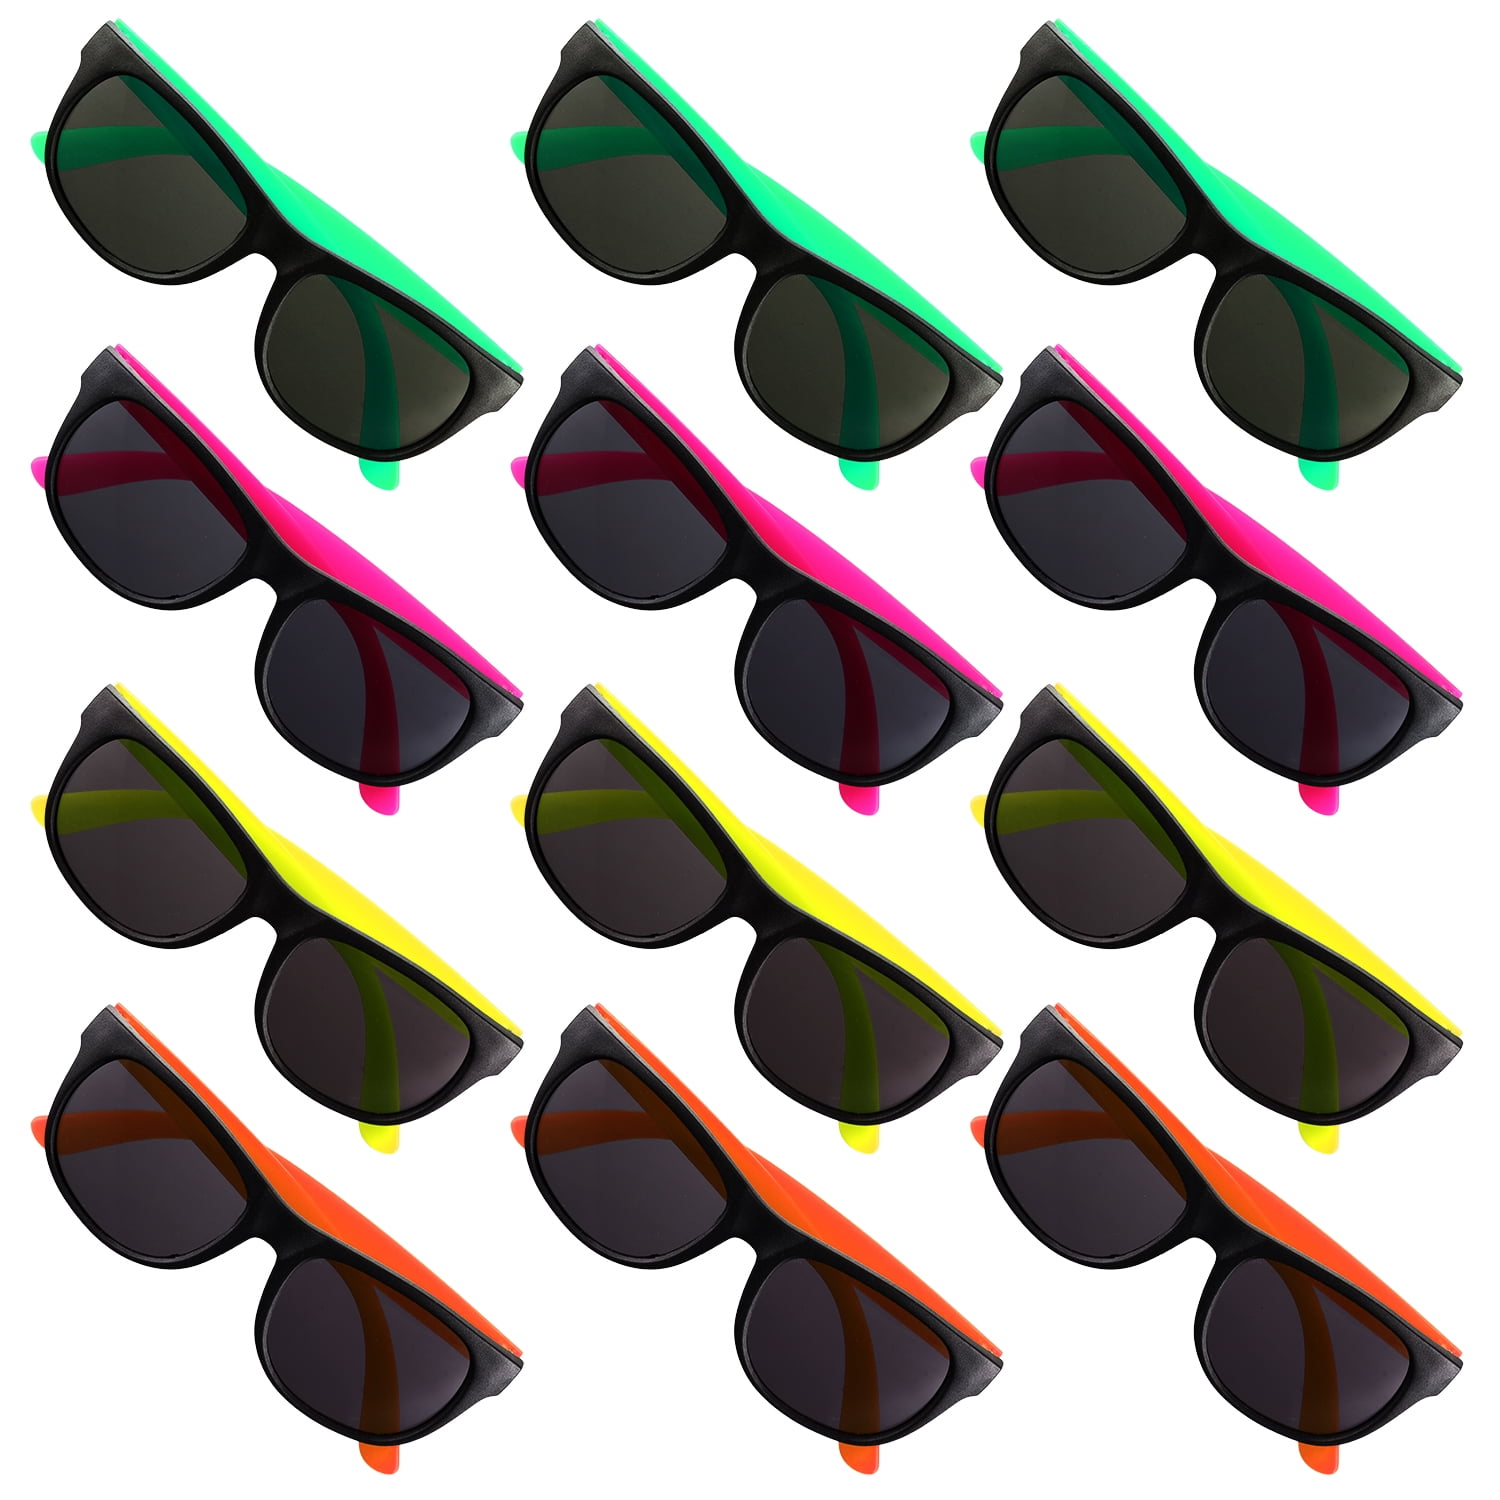 10 Neon Colors Unisex Wholesale Sunglasses for Kids Party Favor Supplies 10Brown